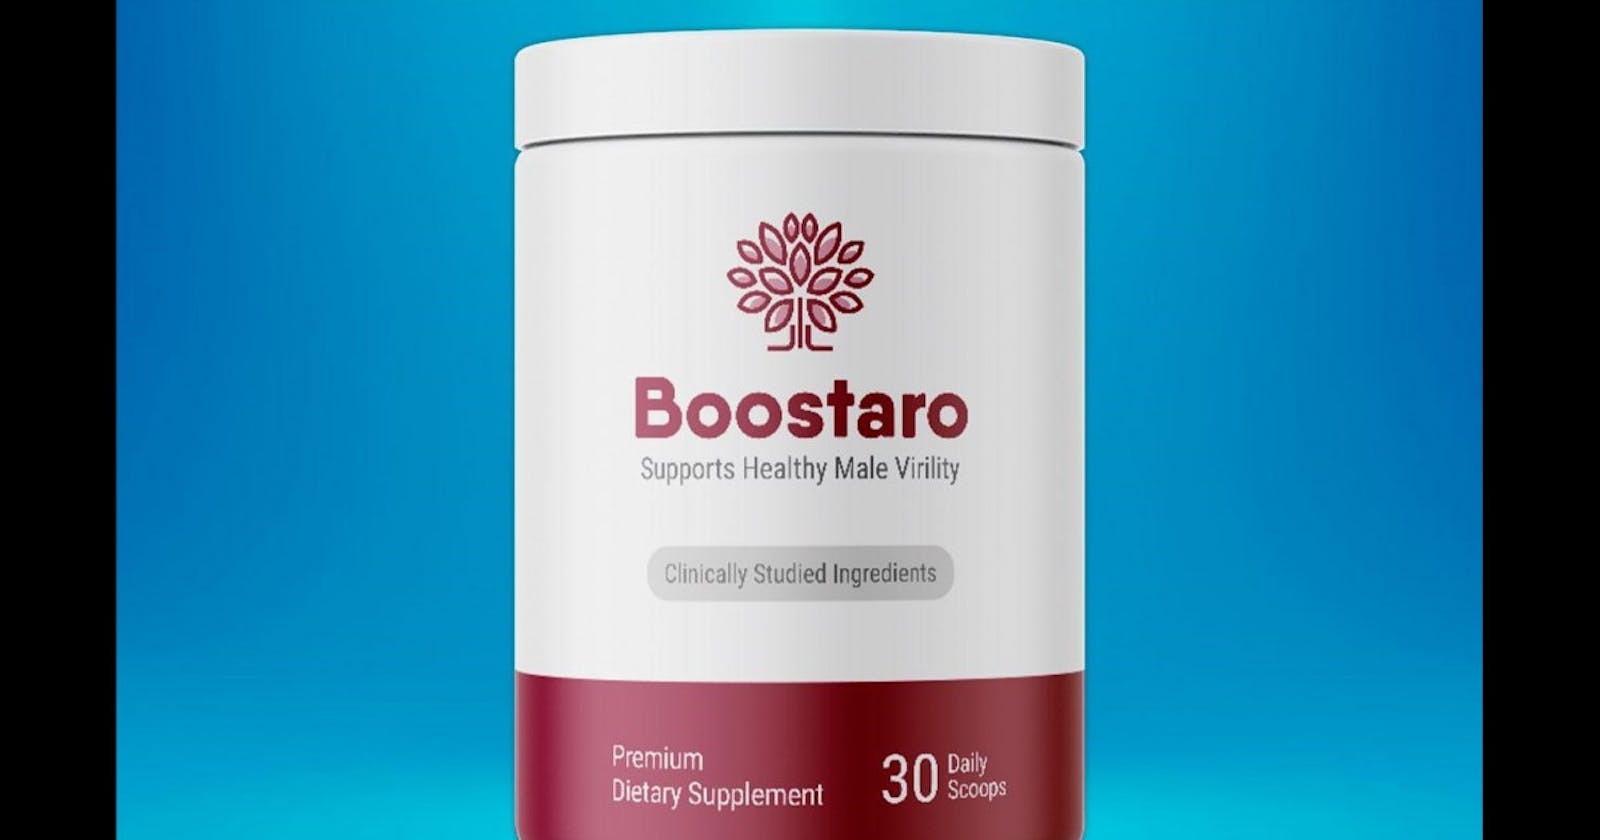 Boostaro Reviews | Should You Buy It?